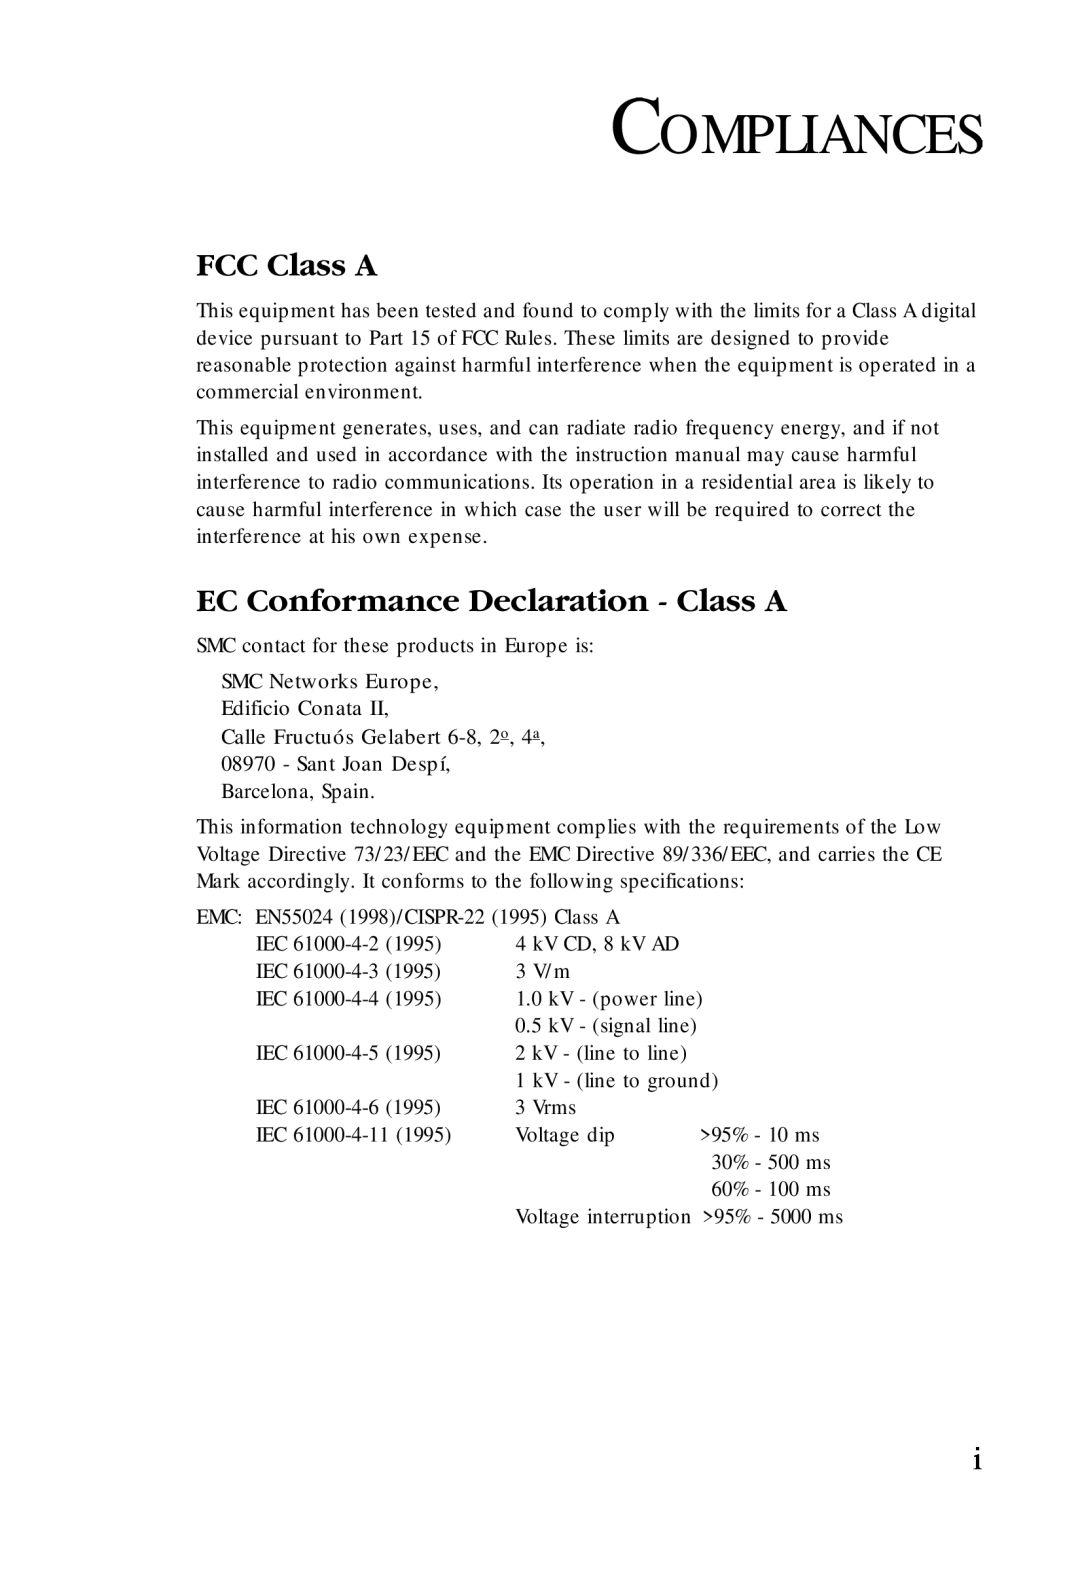 SMC Networks SMC-EZ1024DT manual Compliances, FCC Class A, EC Conformance Declaration - Class A 